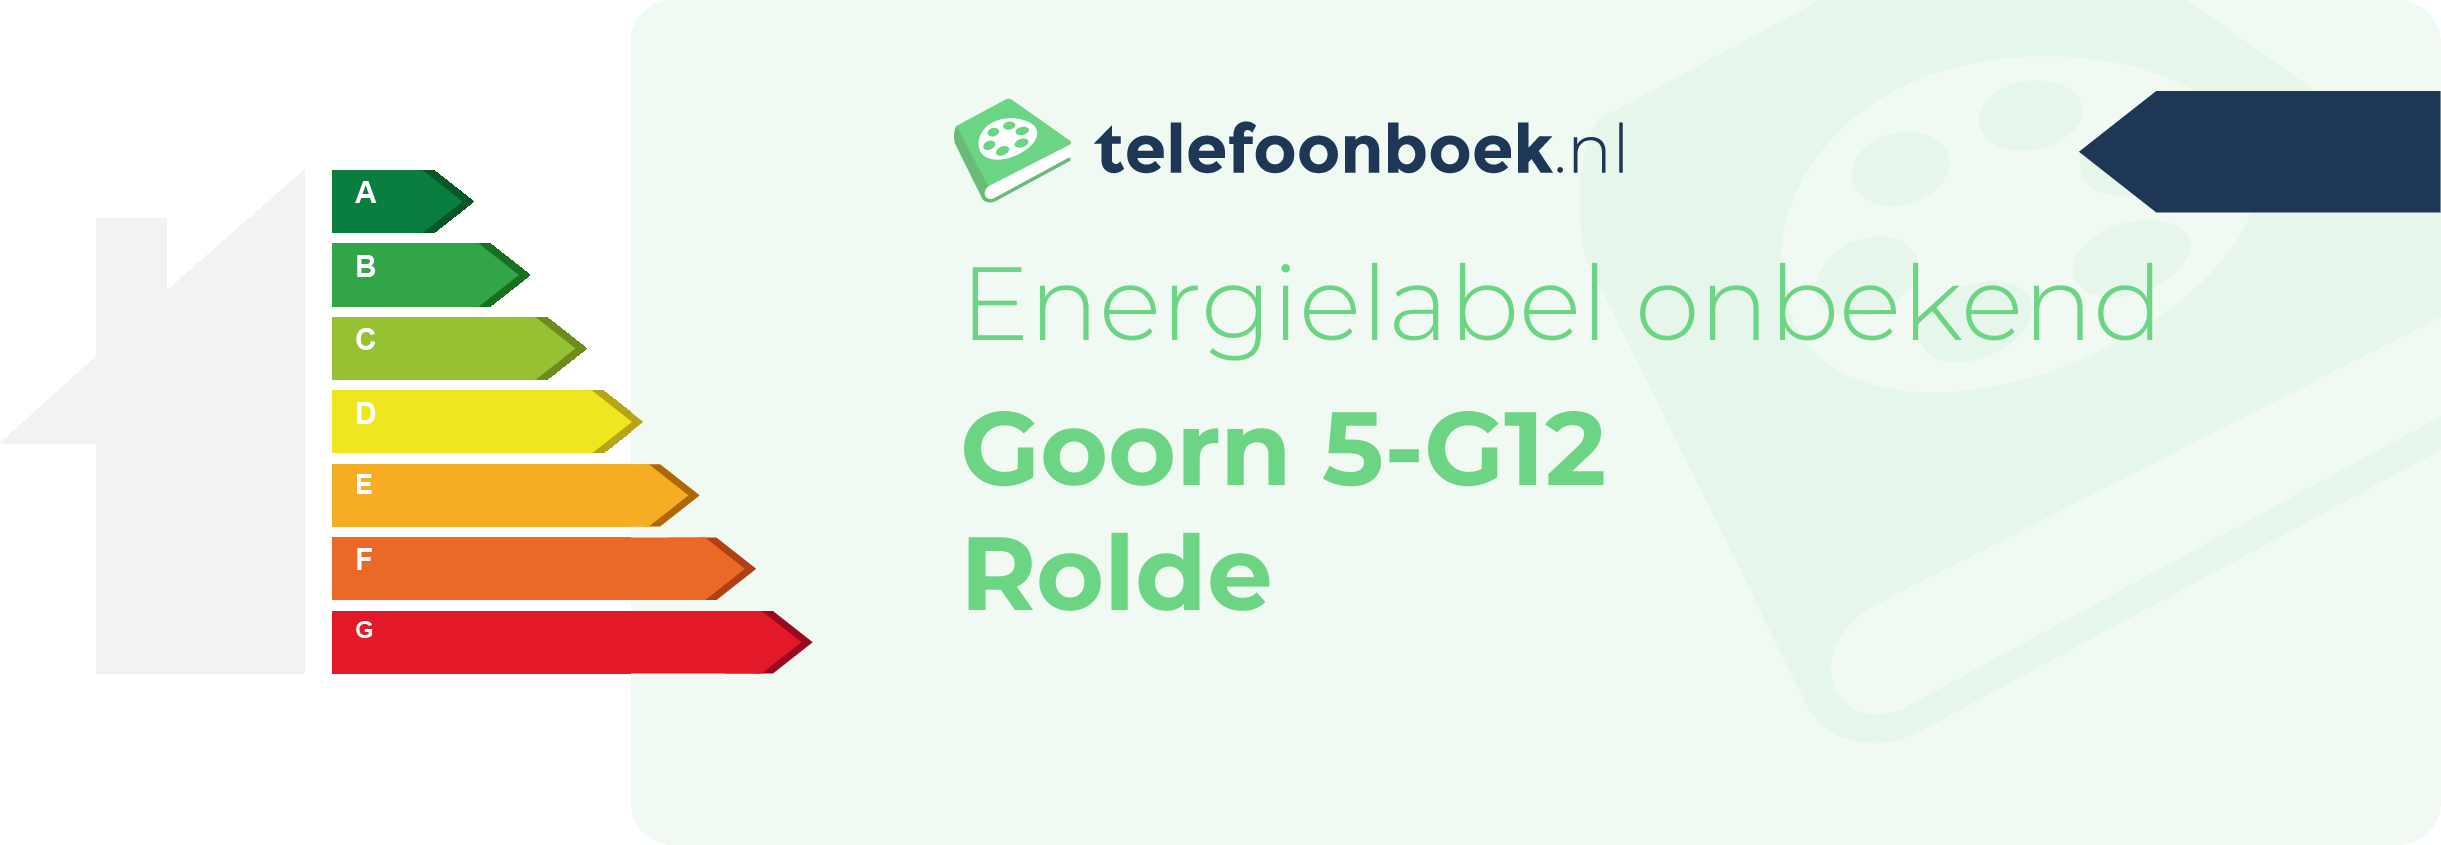 Energielabel Goorn 5-G12 Rolde